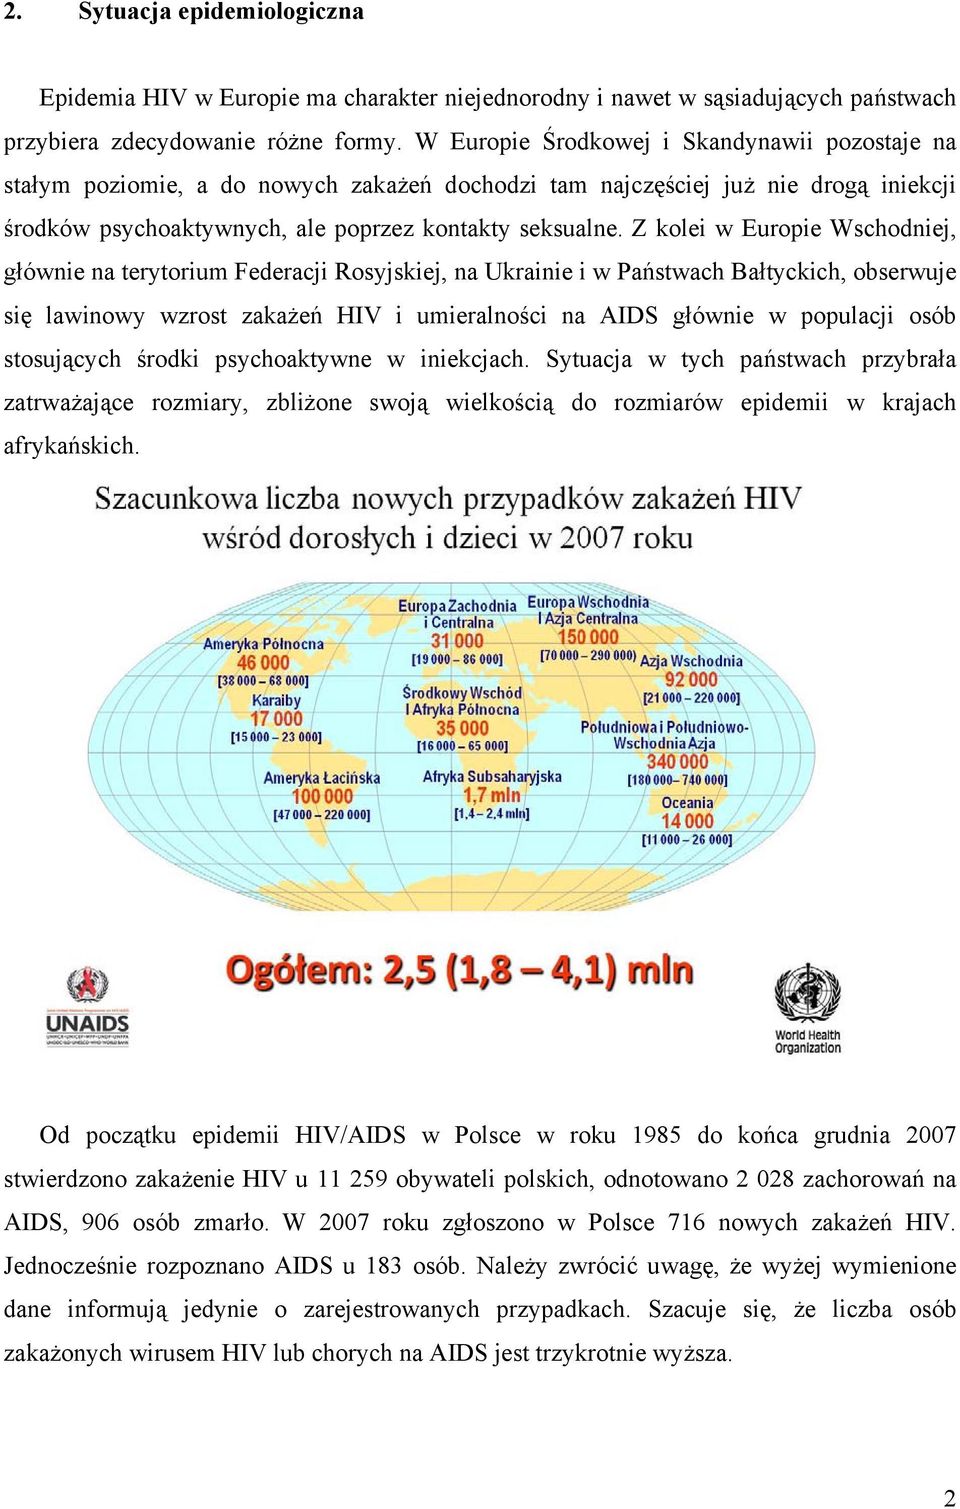 Z kolei w Europie Wschodniej, głównie na terytorium Federacji Rosyjskiej, na Ukrainie i w Państwach Bałtyckich, obserwuje się lawinowy wzrost zakażeń HIV i umieralności na AIDS głównie w populacji